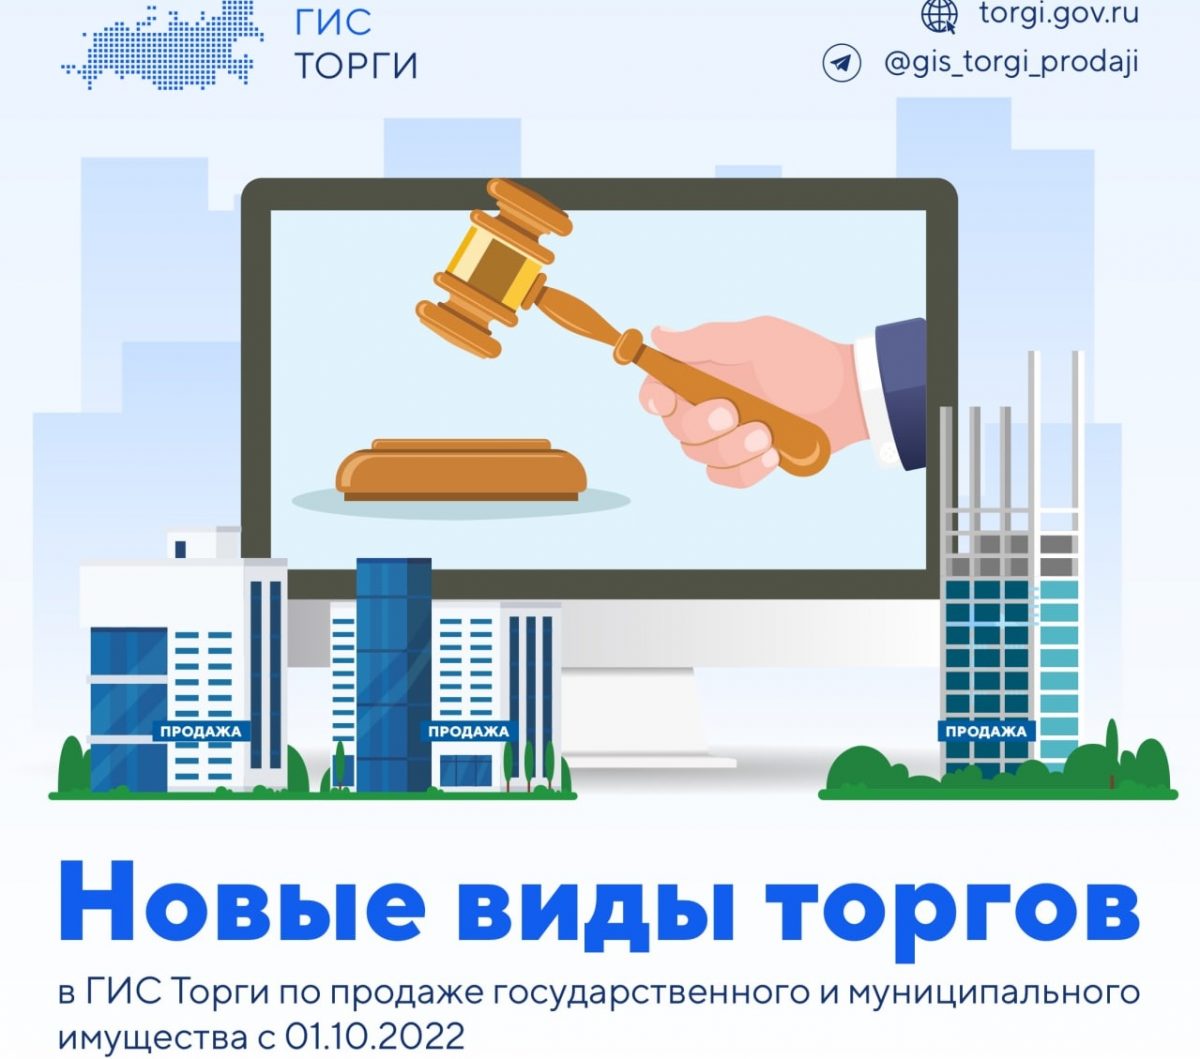 Минфину РФ поручено провести эксперимент по продаже непрофильных активов госкомпаний в ГИС «Торги»